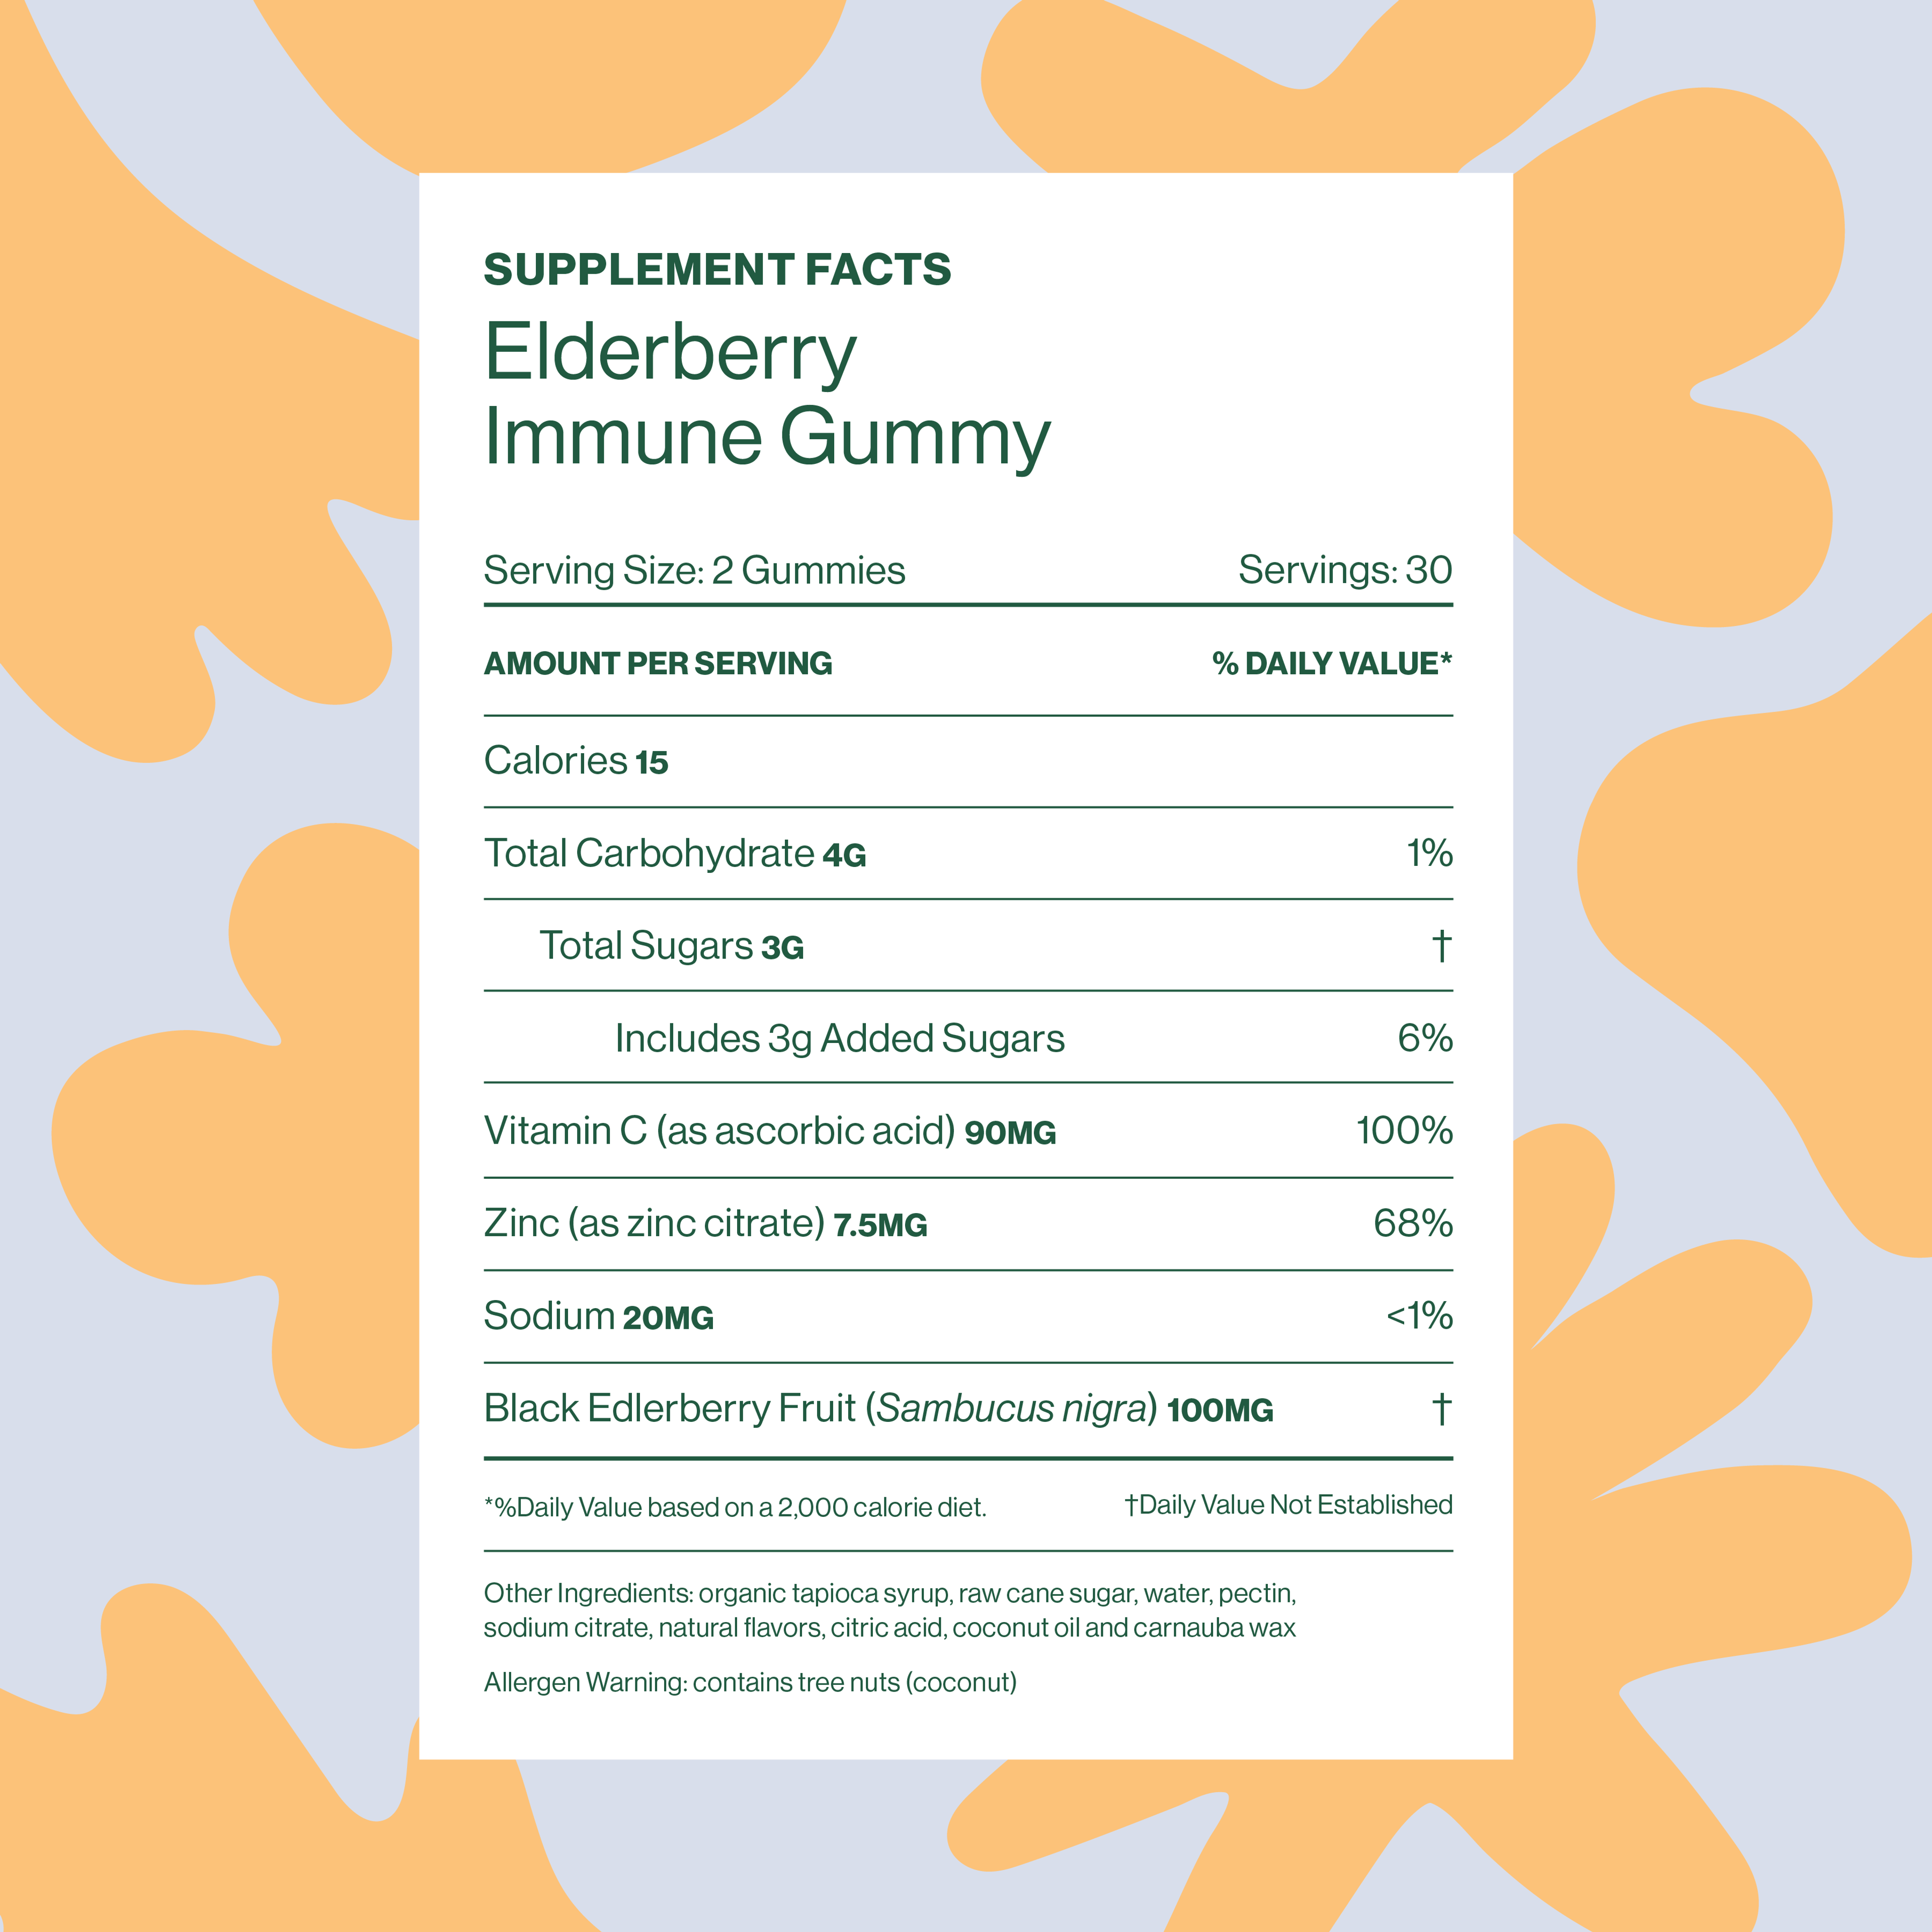 Elderberry Immune Gummy